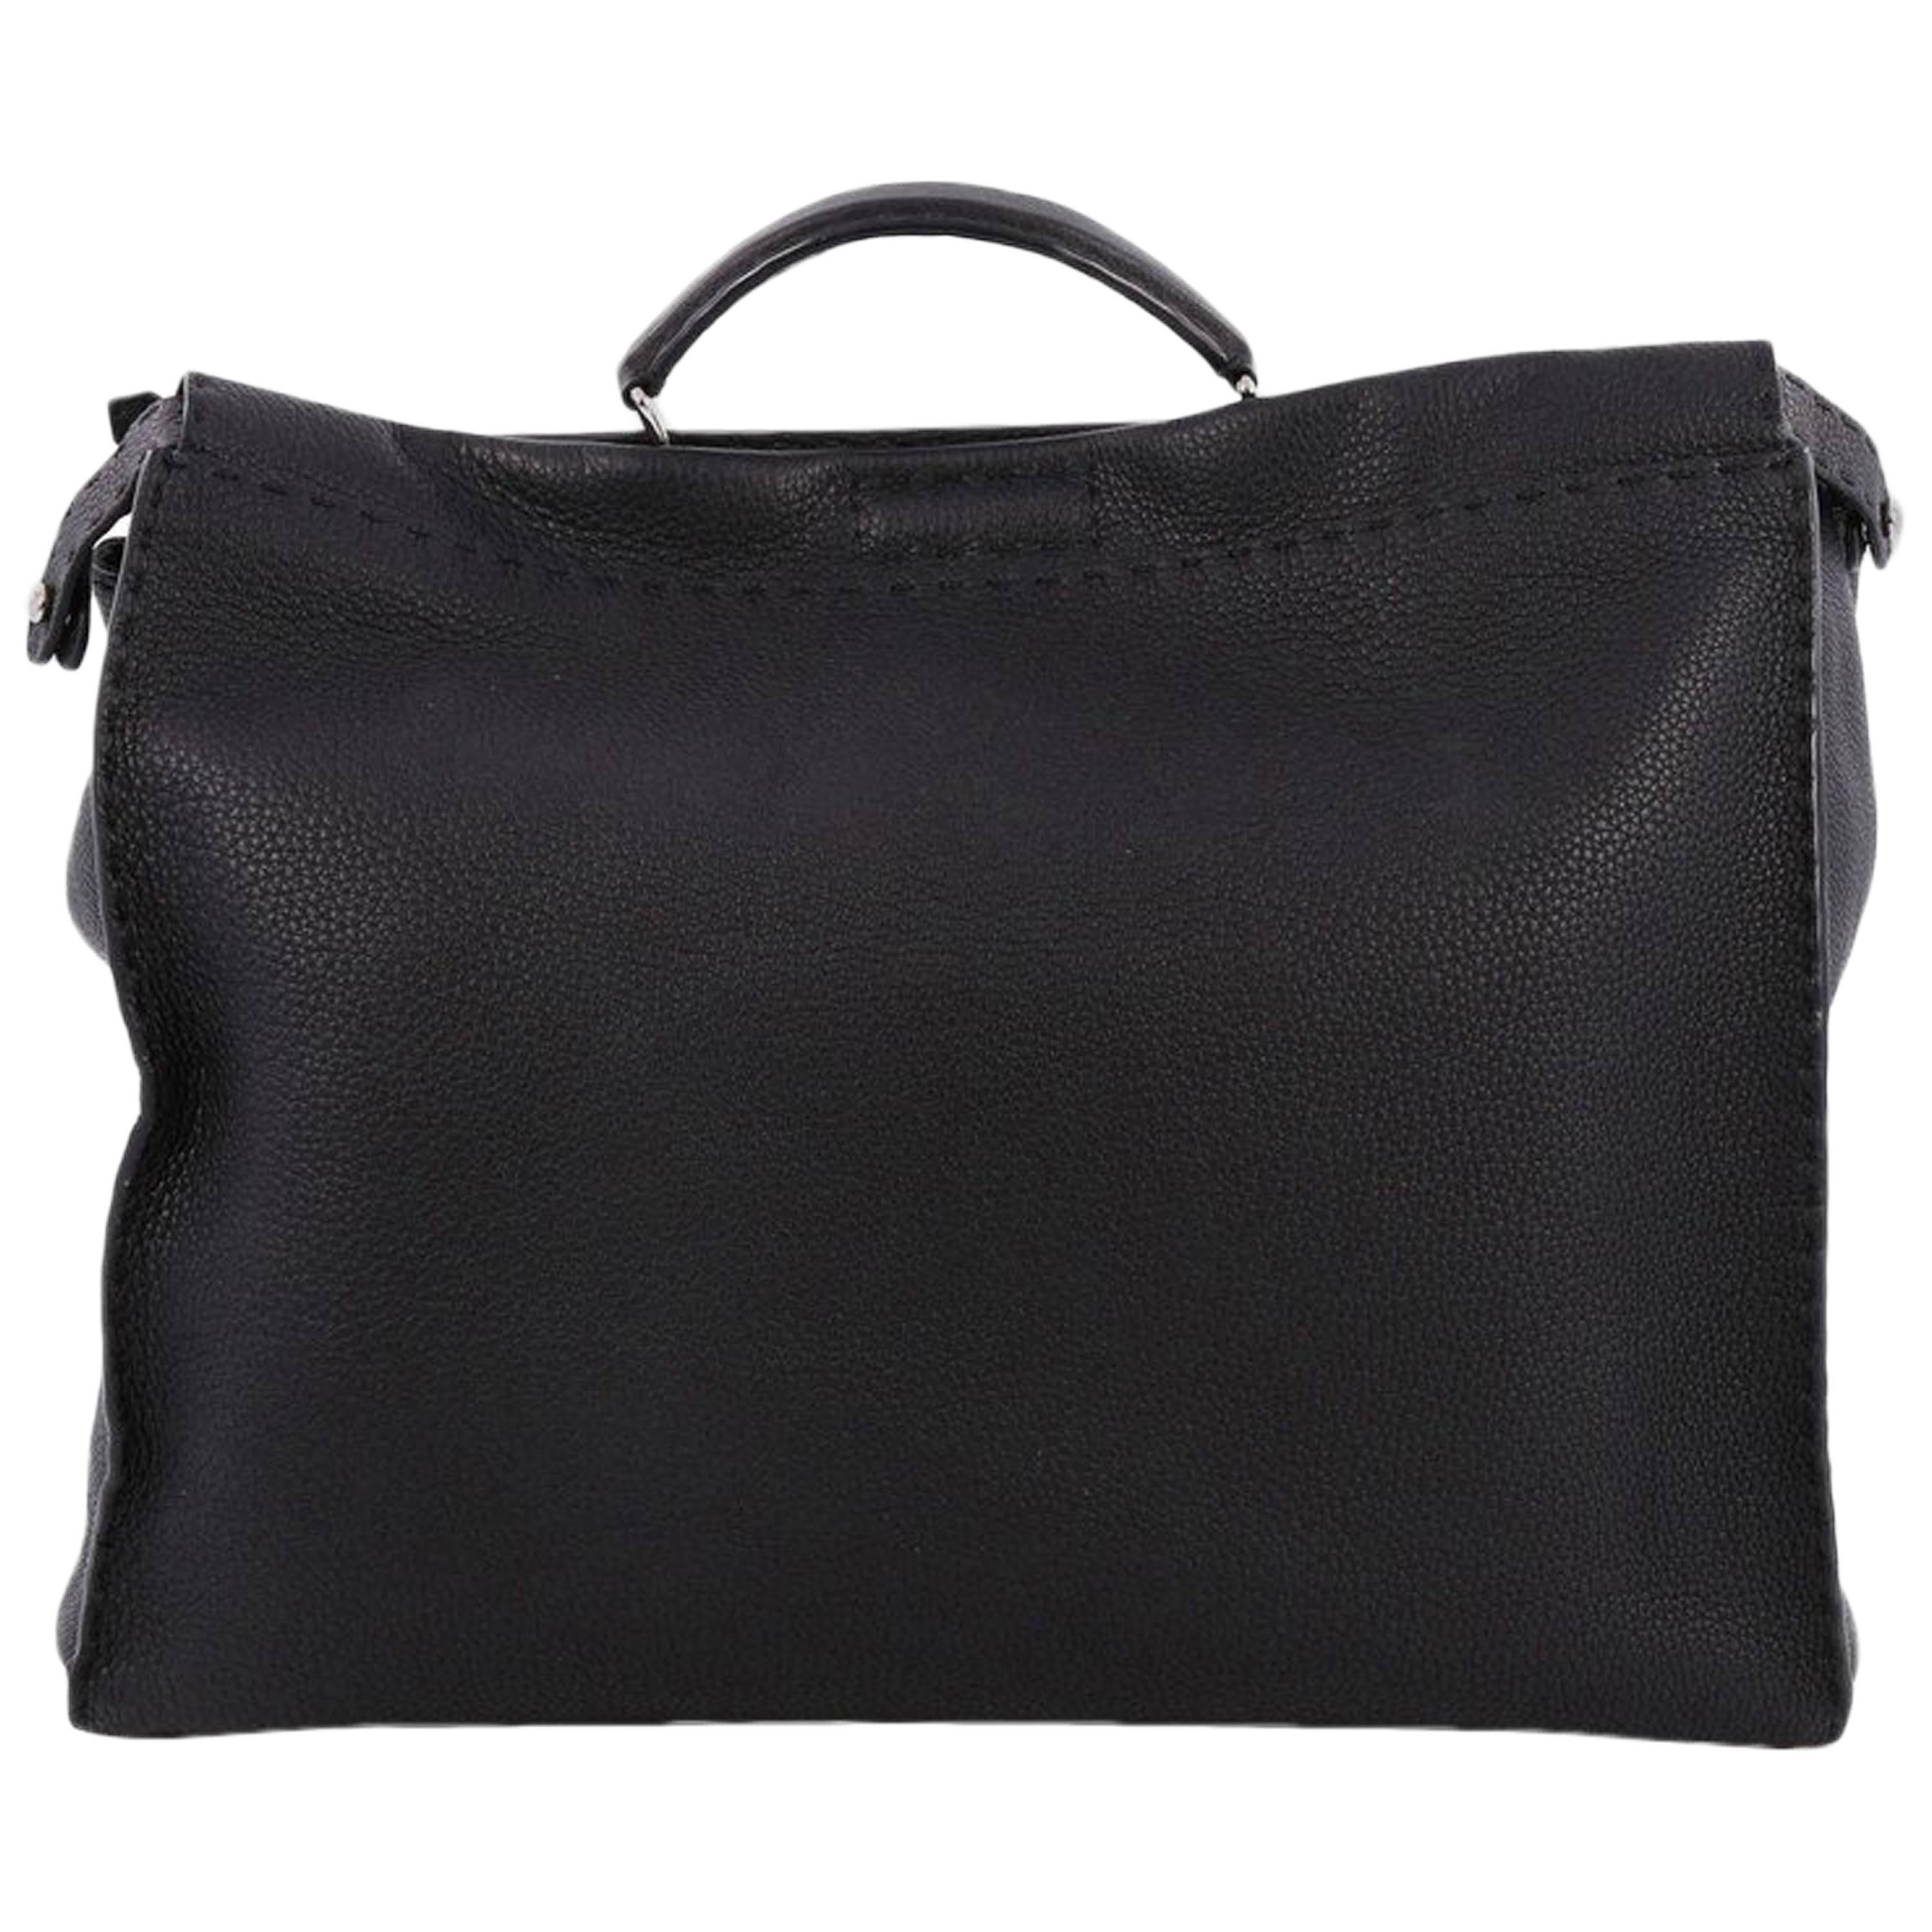 Fendi Selleria Peekaboo Monster Handbag Leather XL